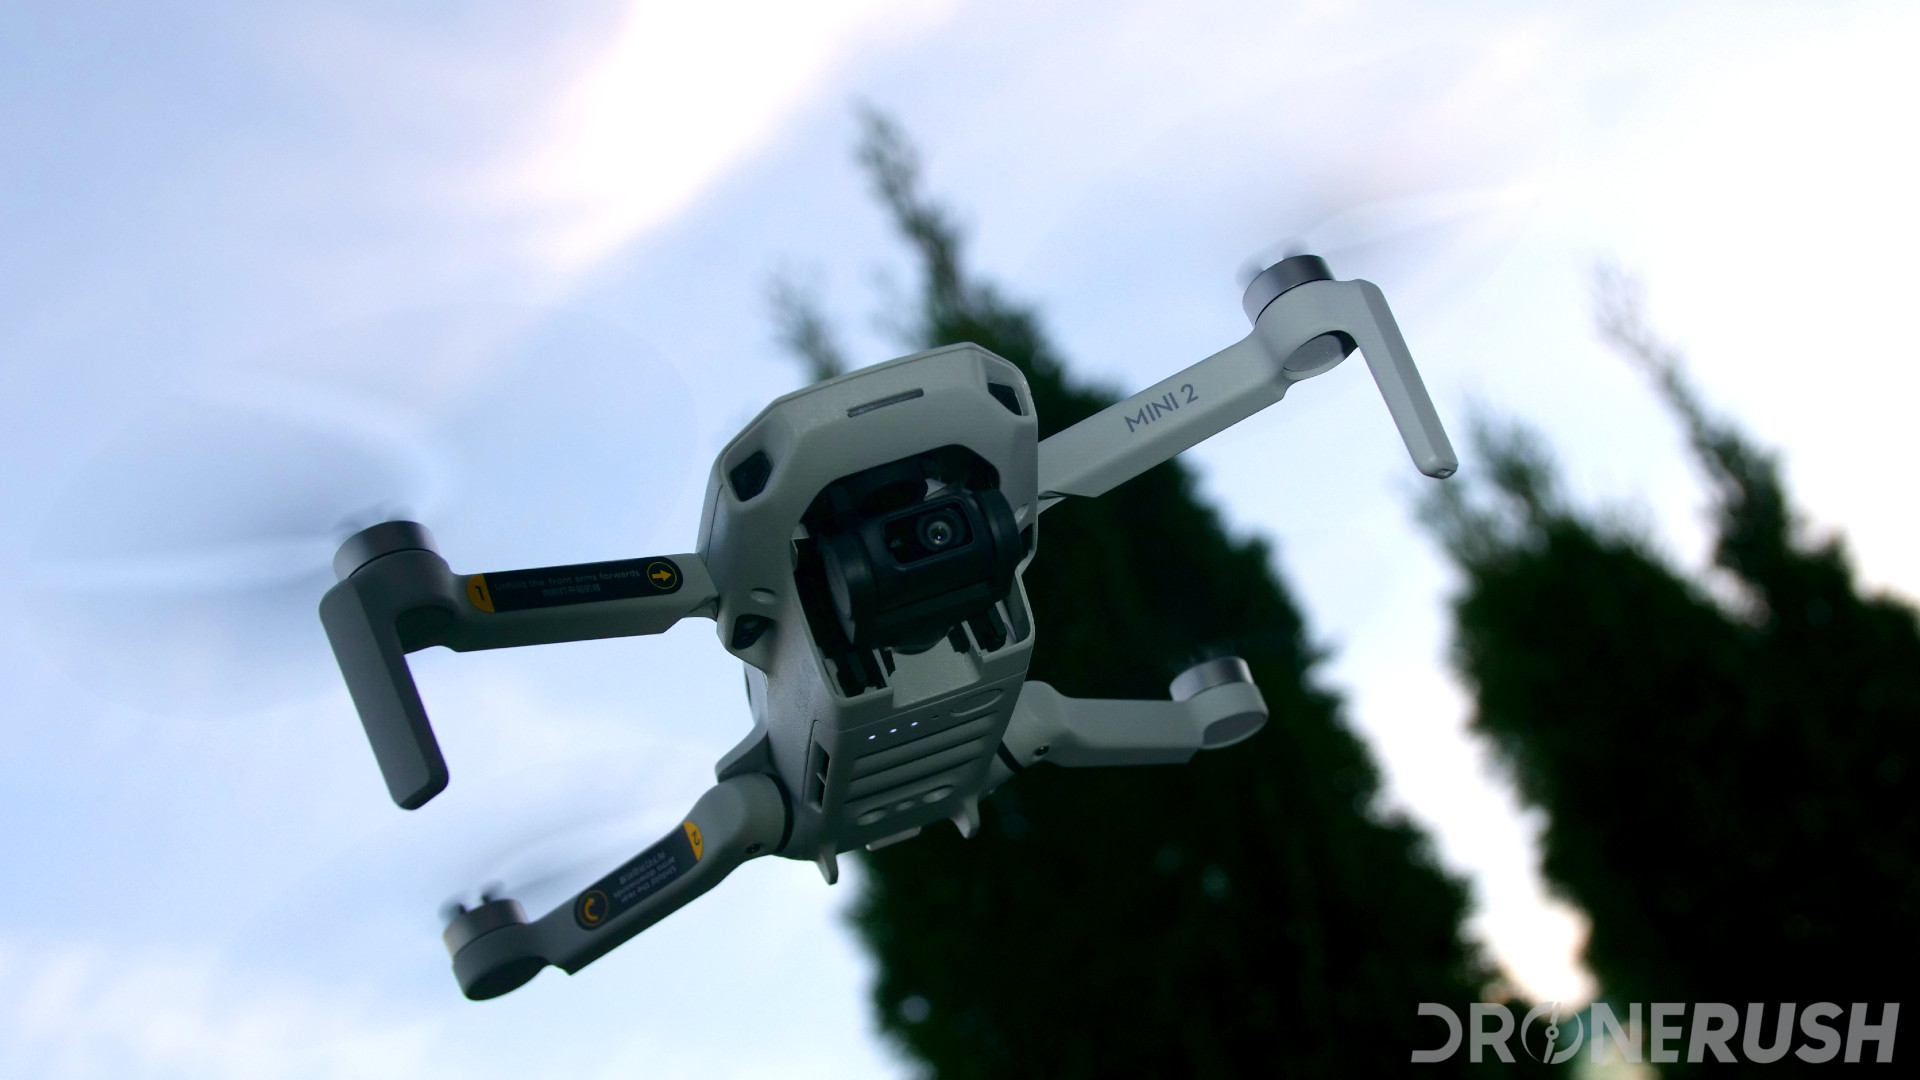 DJI Mini 2 - Drone Rush